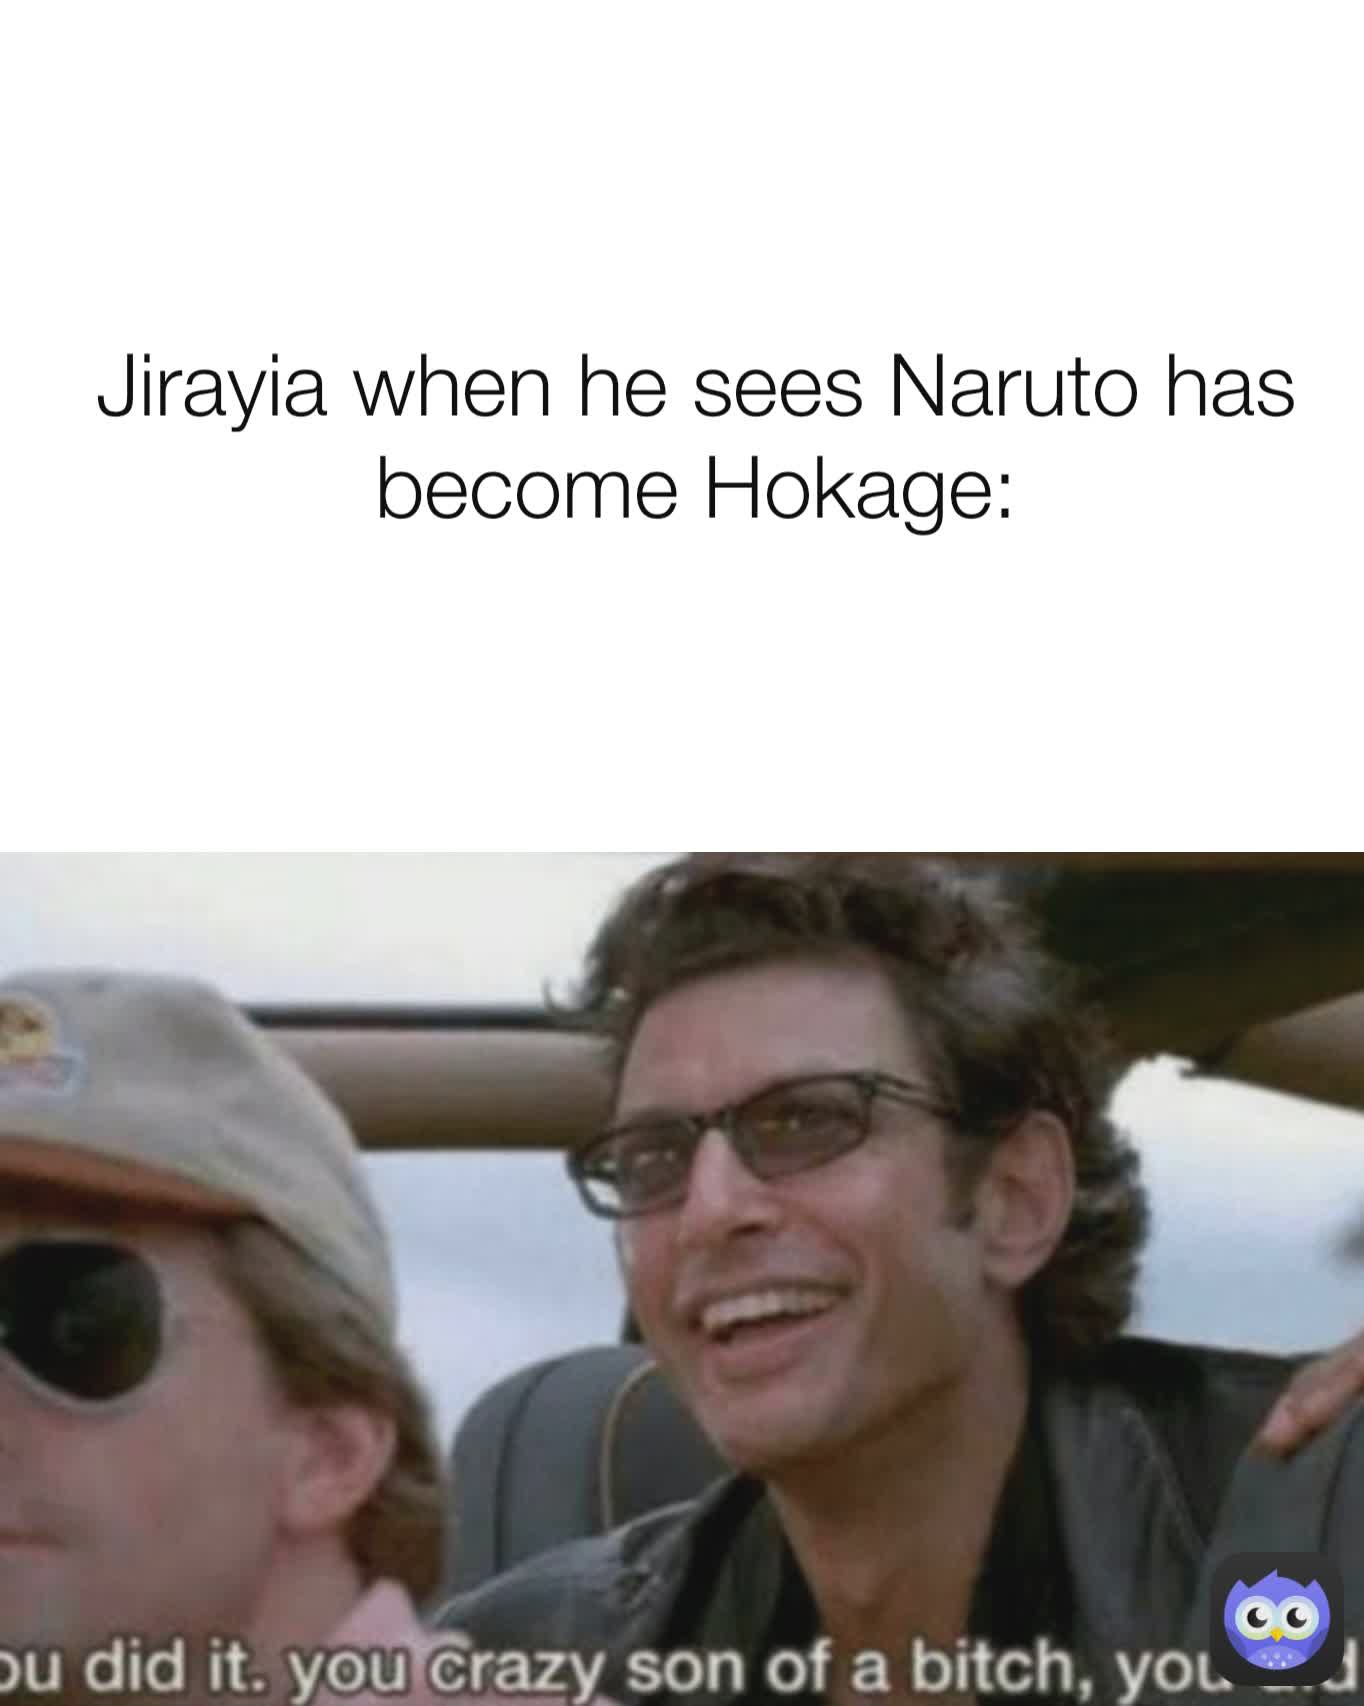 Jirayia when he sees Naruto has become Hokage: